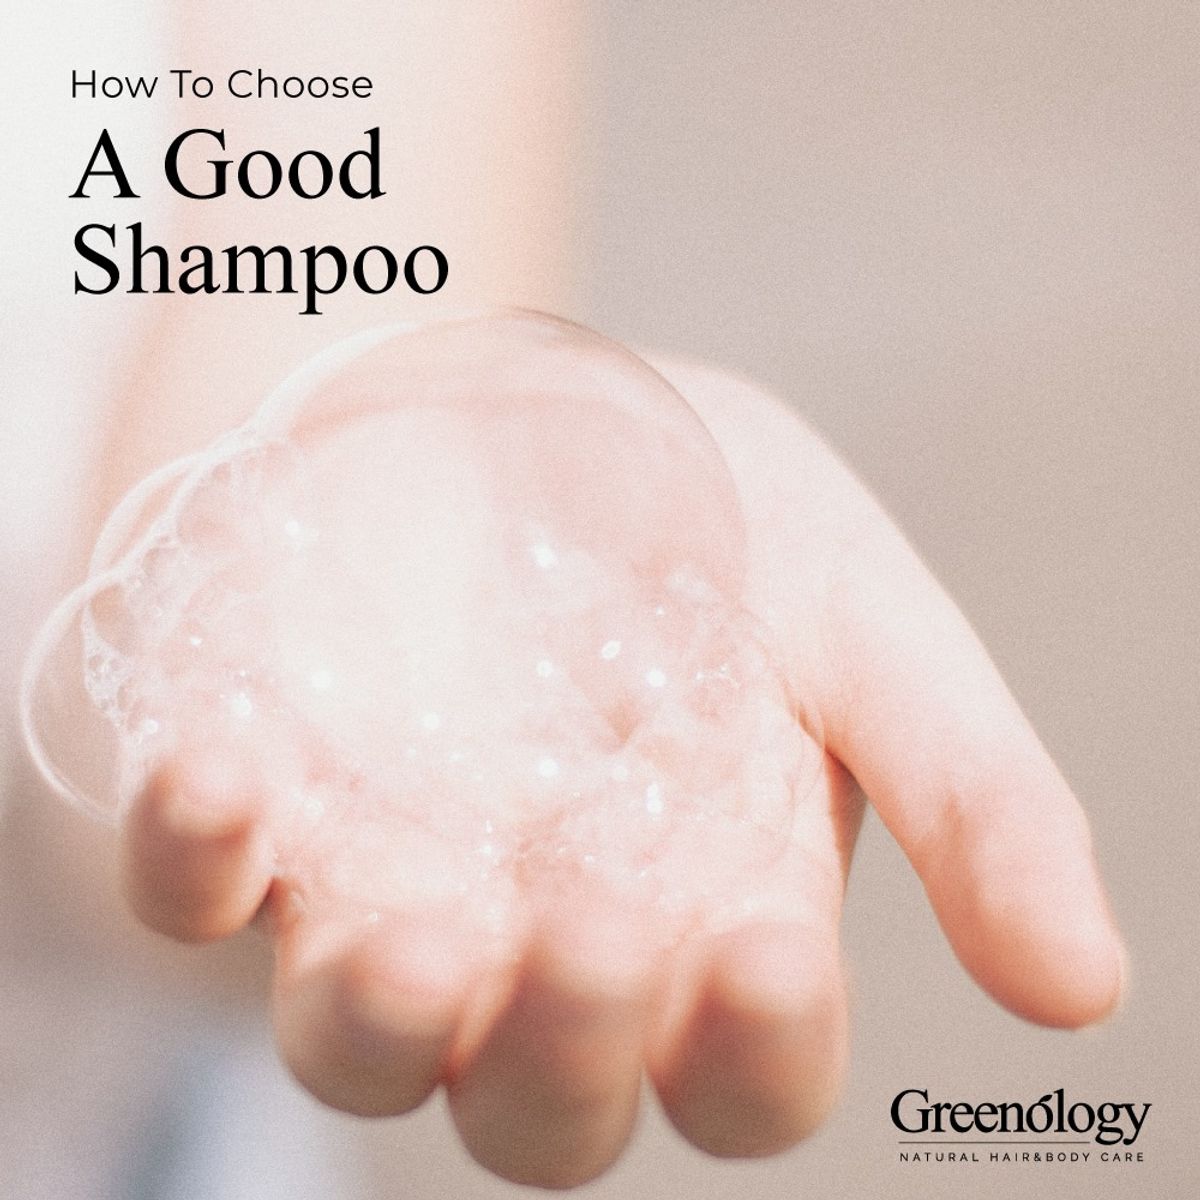 How To Choose A Good Shampoo